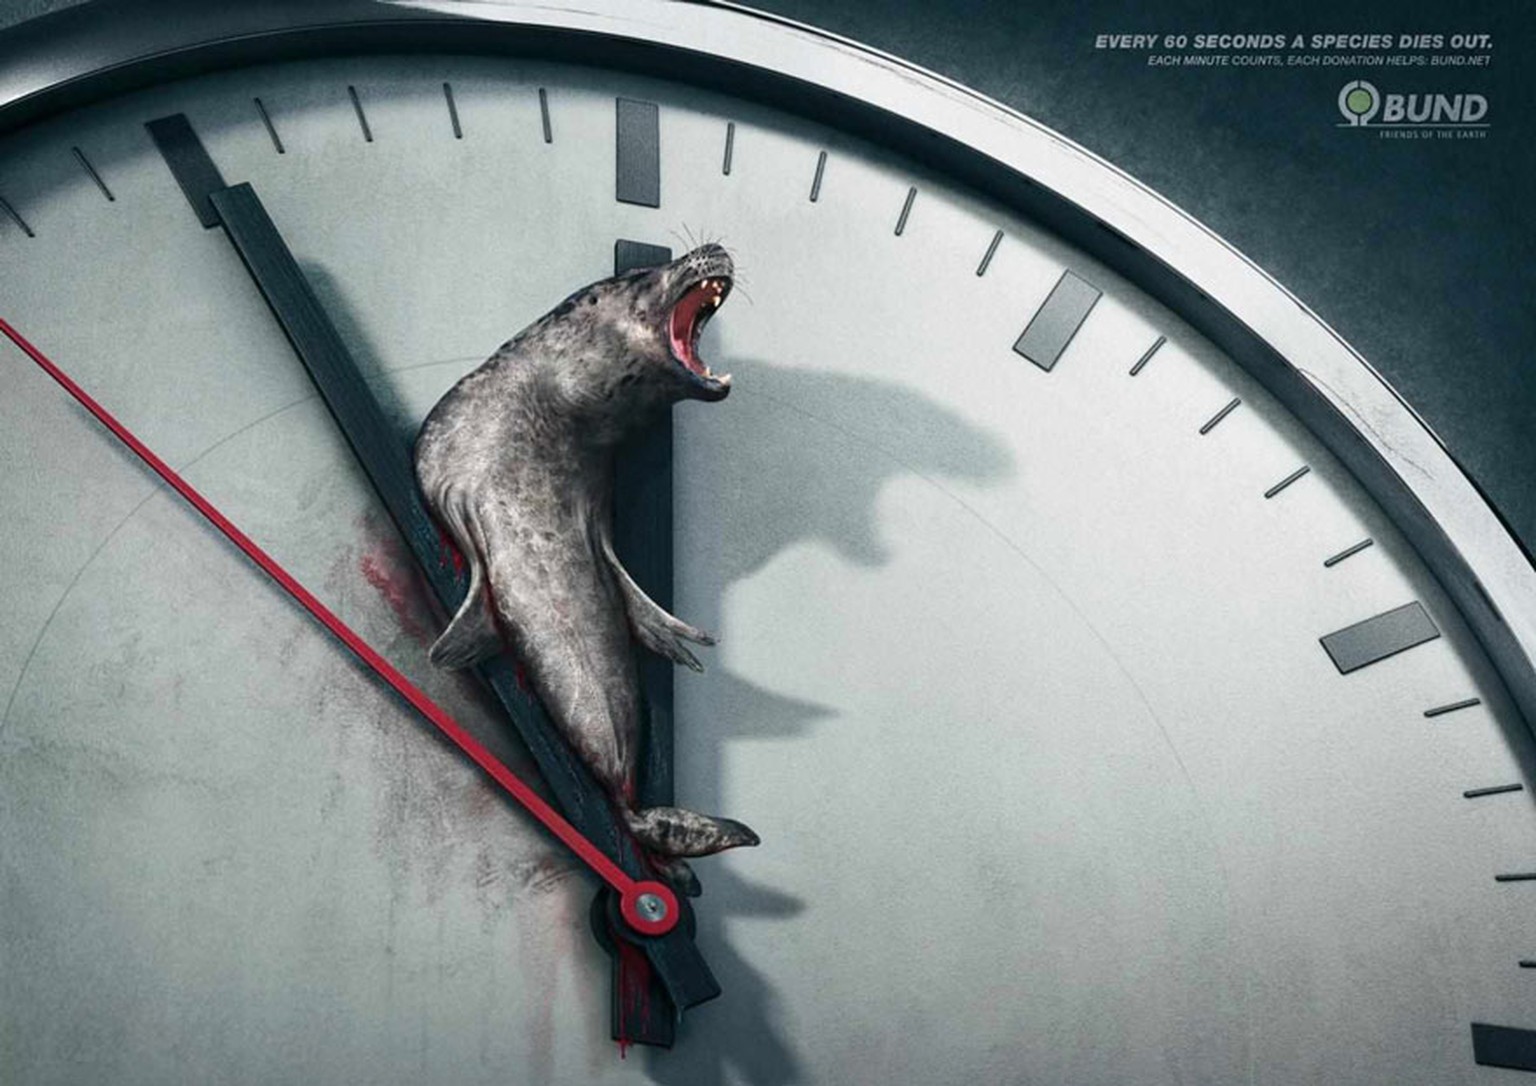 «BUND» ist eine deutsche Natur- und Umweltschutz-Organisation, die mit diesen Plakaten die Menschen auf das Aussterben von Tierarten aufmerksam machen will: «Alle 60 Sekunden stirbt eine Tierart aus.  ...